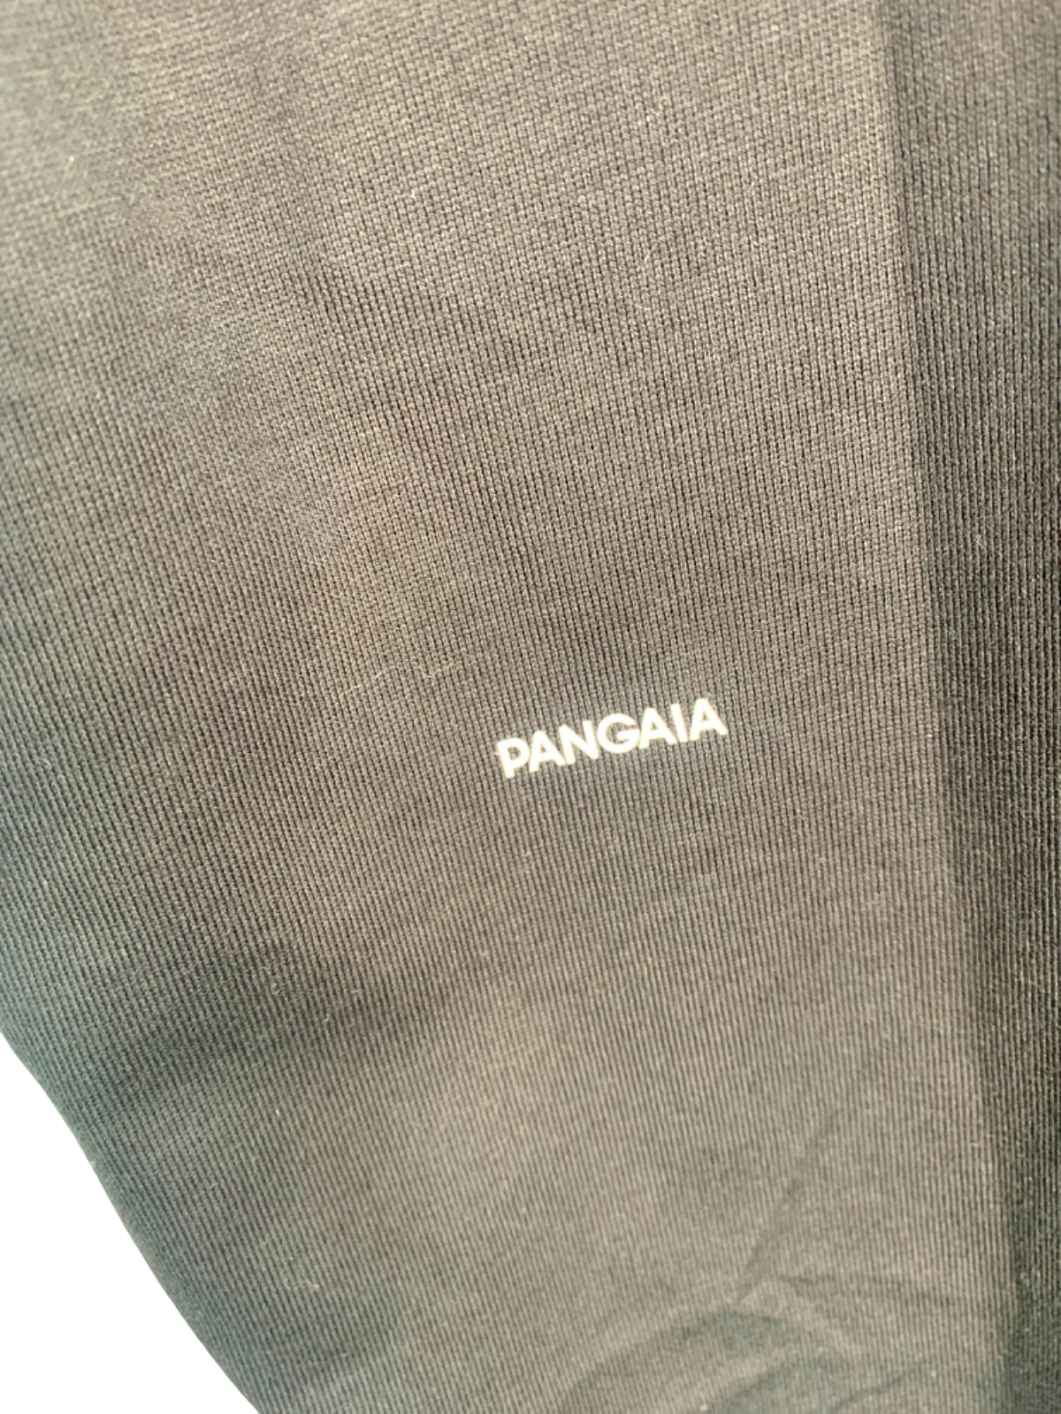 Pangaia Black Seaweed Fiber Cropped Shoulder T-Shirt M